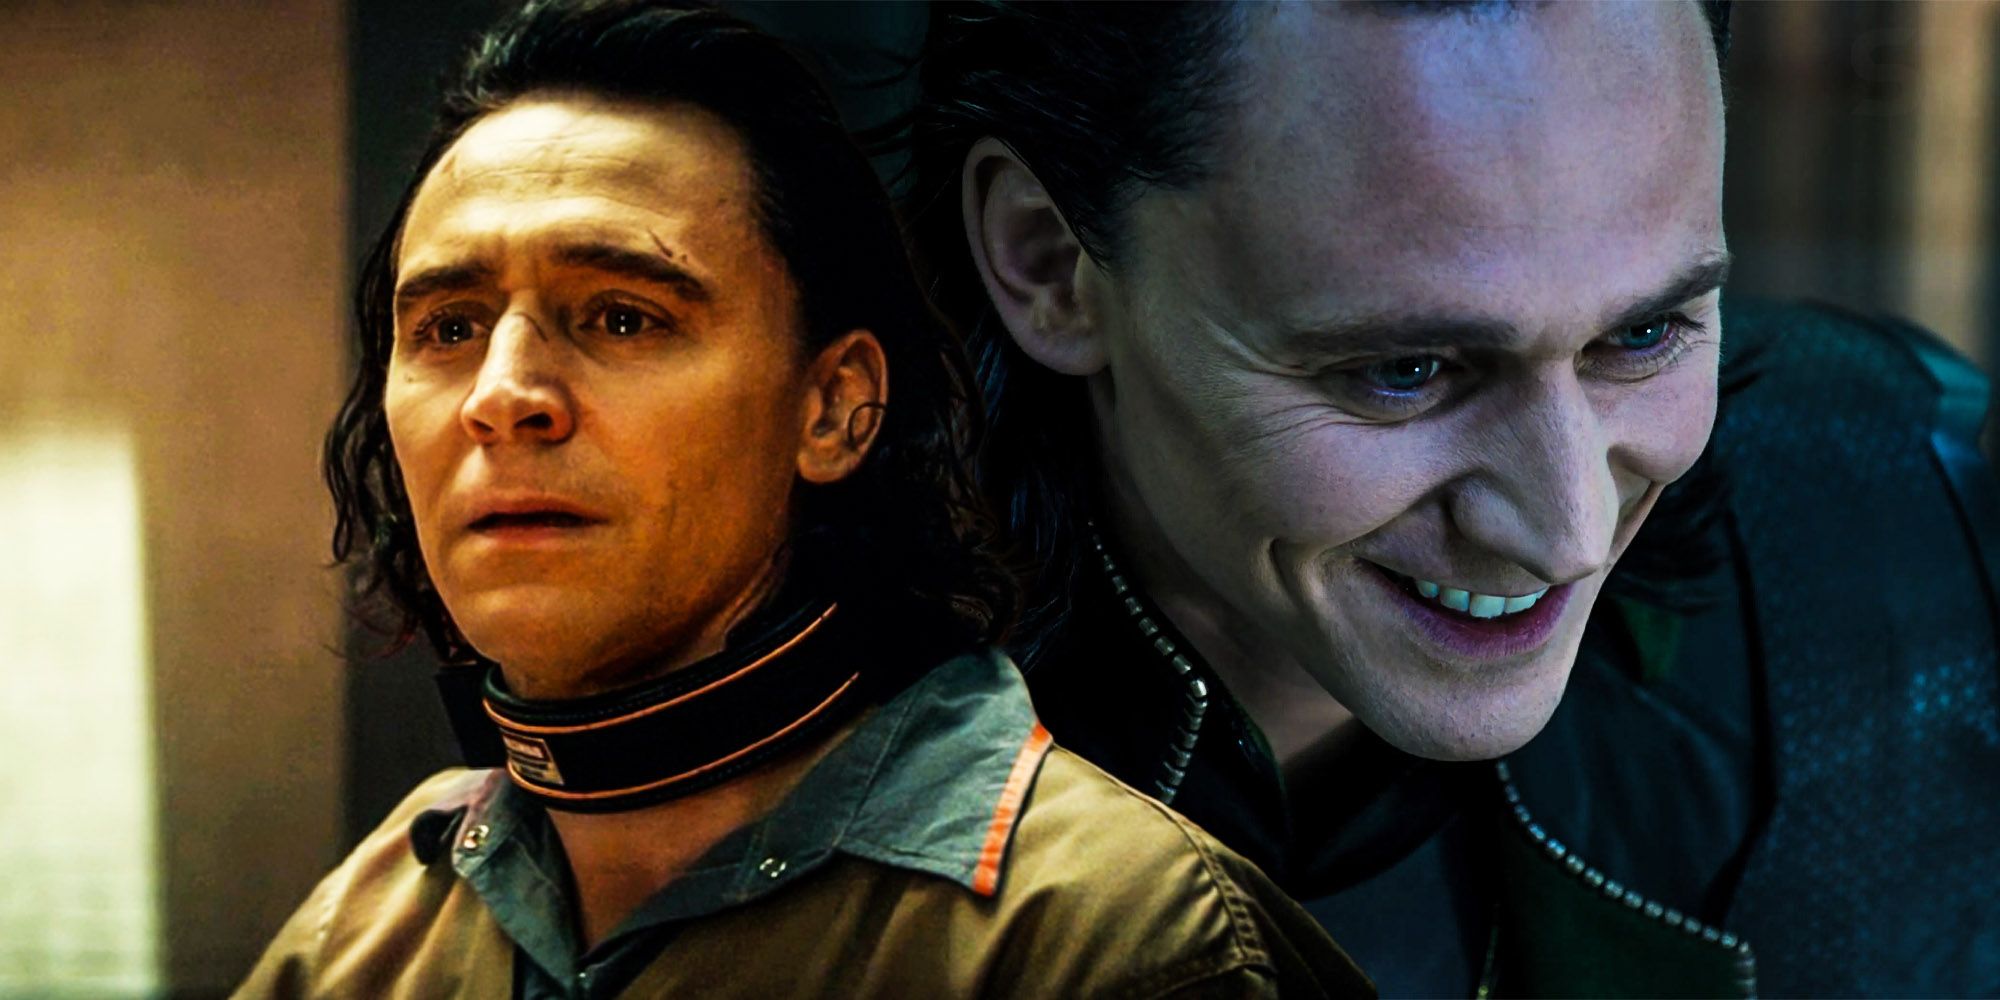 Loki tom hiddleston Loki is the villain of the series